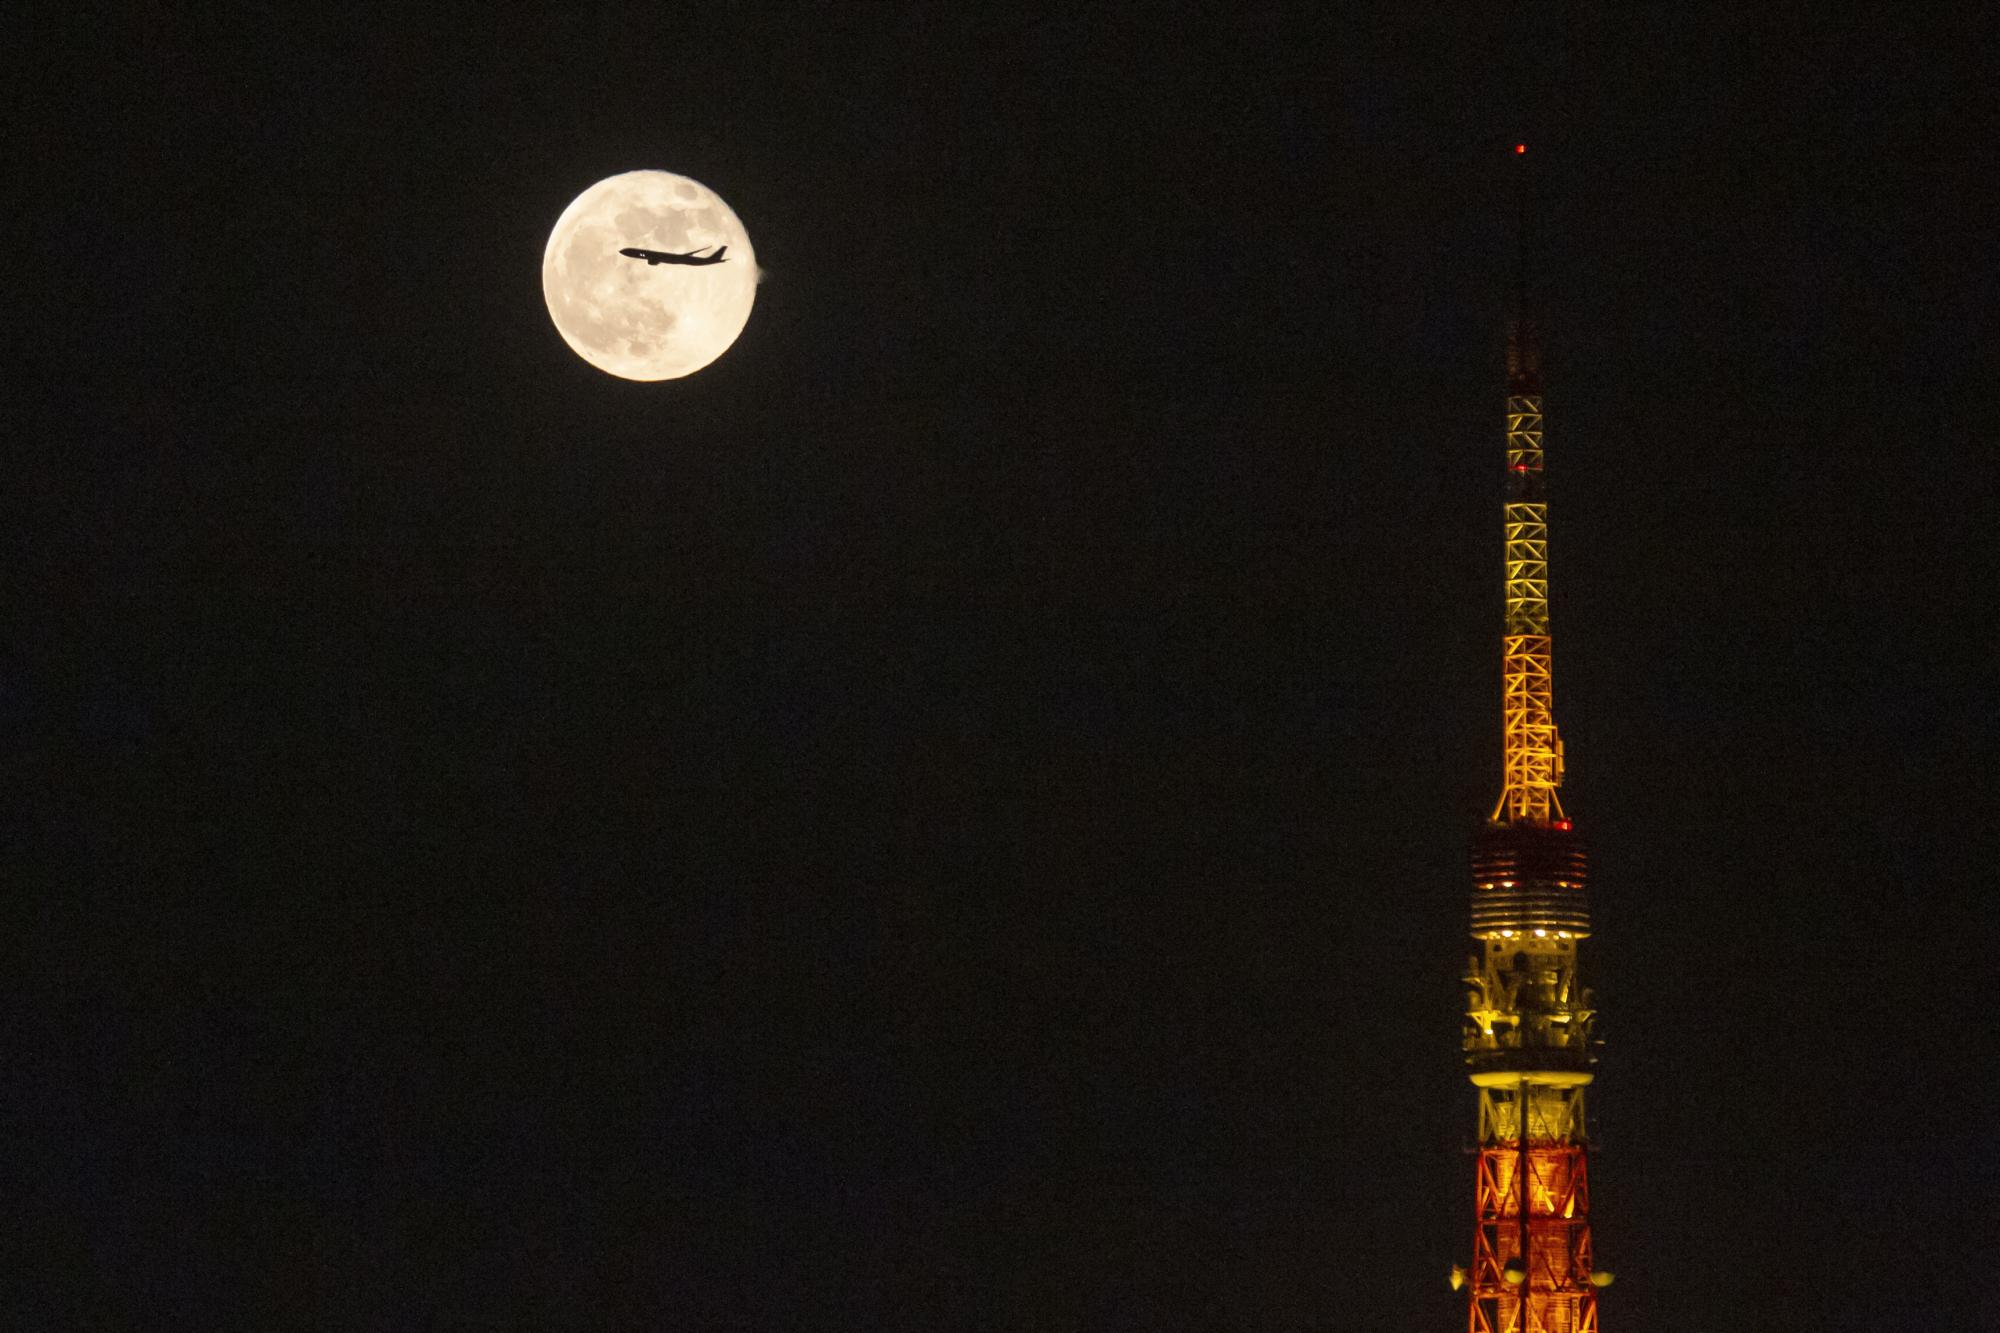 Un avión sobrevuela la luna elevándose sobre la Torre de Tokio el sábado 20 de noviembre de 2021 en Tokio. (Foto AP / Kiichiro Sato)